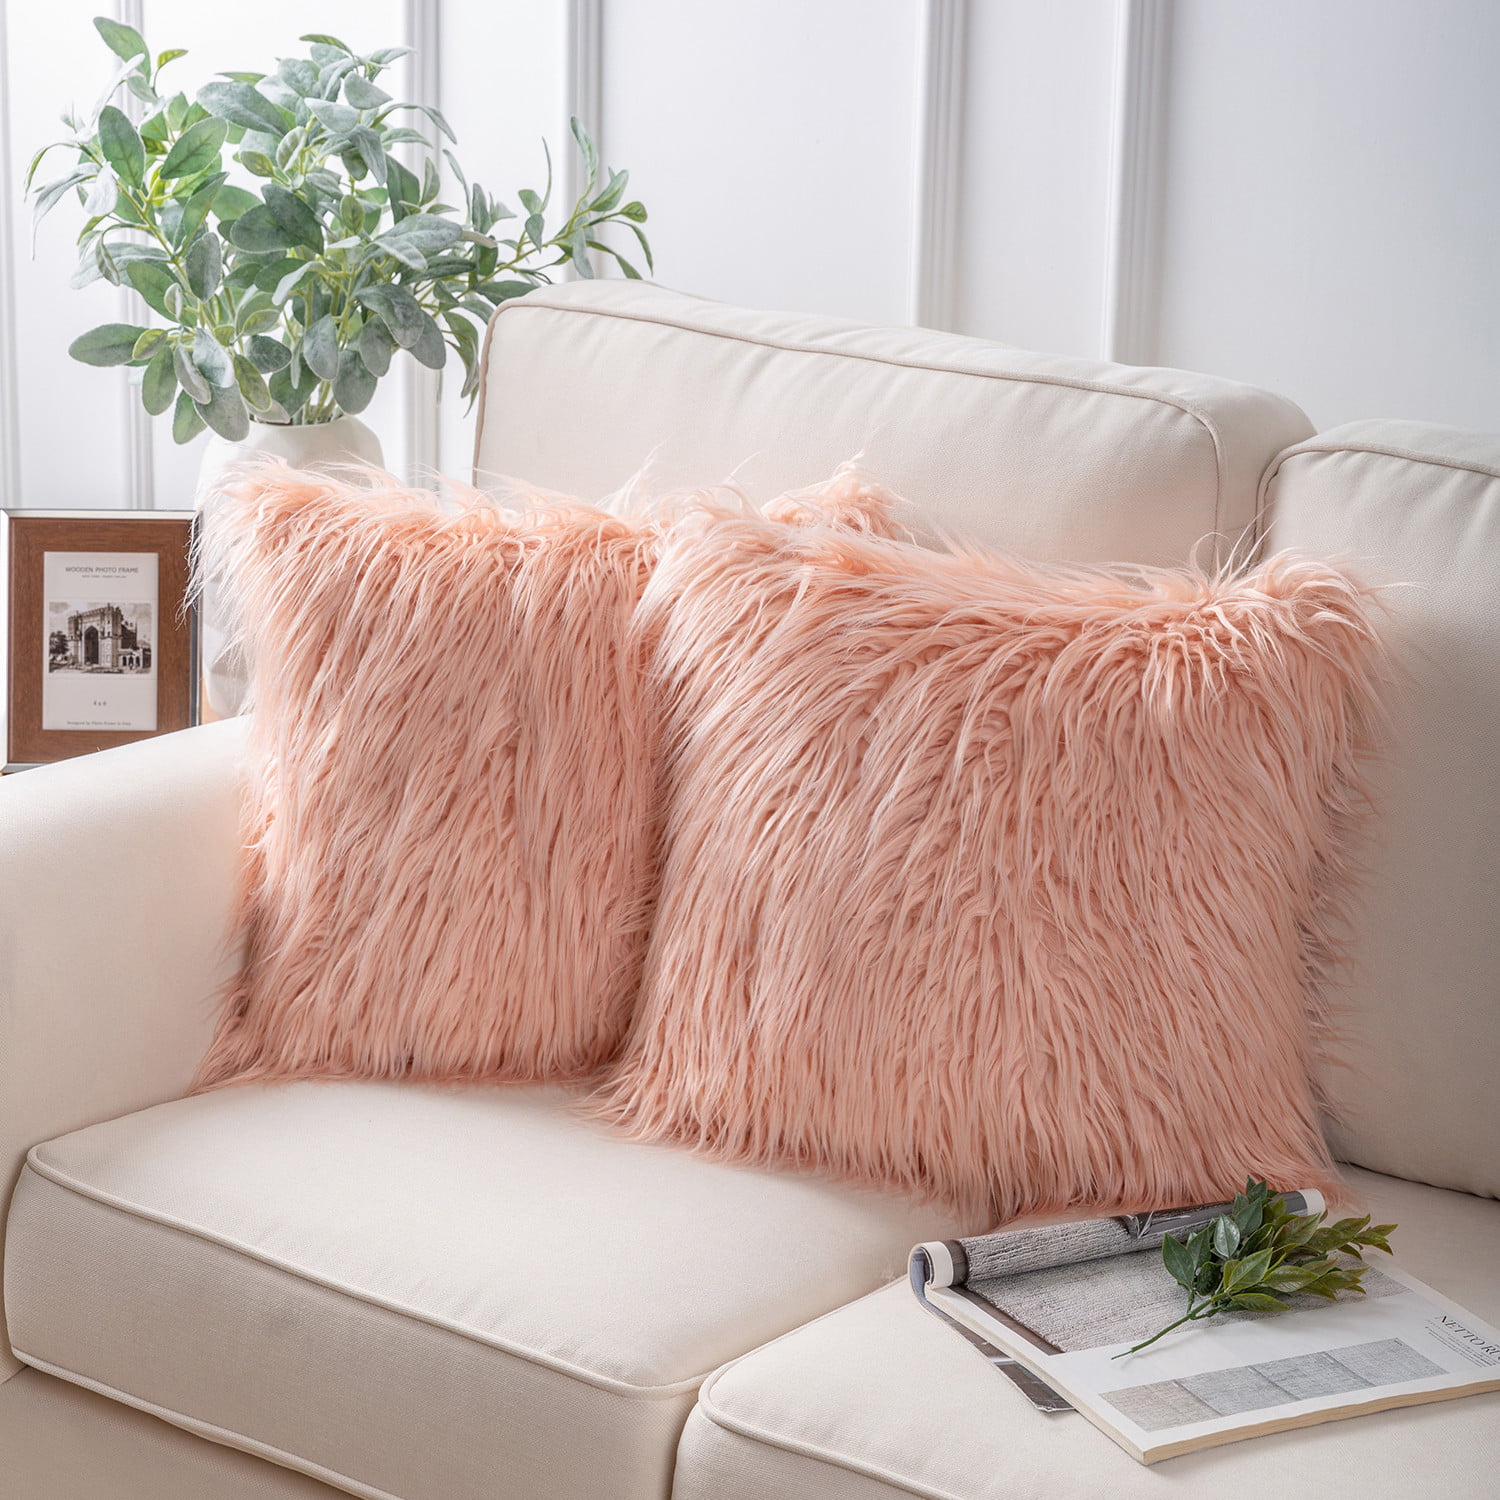 18x18 luxurious faux fur pillow sofa bed fur cushion decor modern luxury pillows 